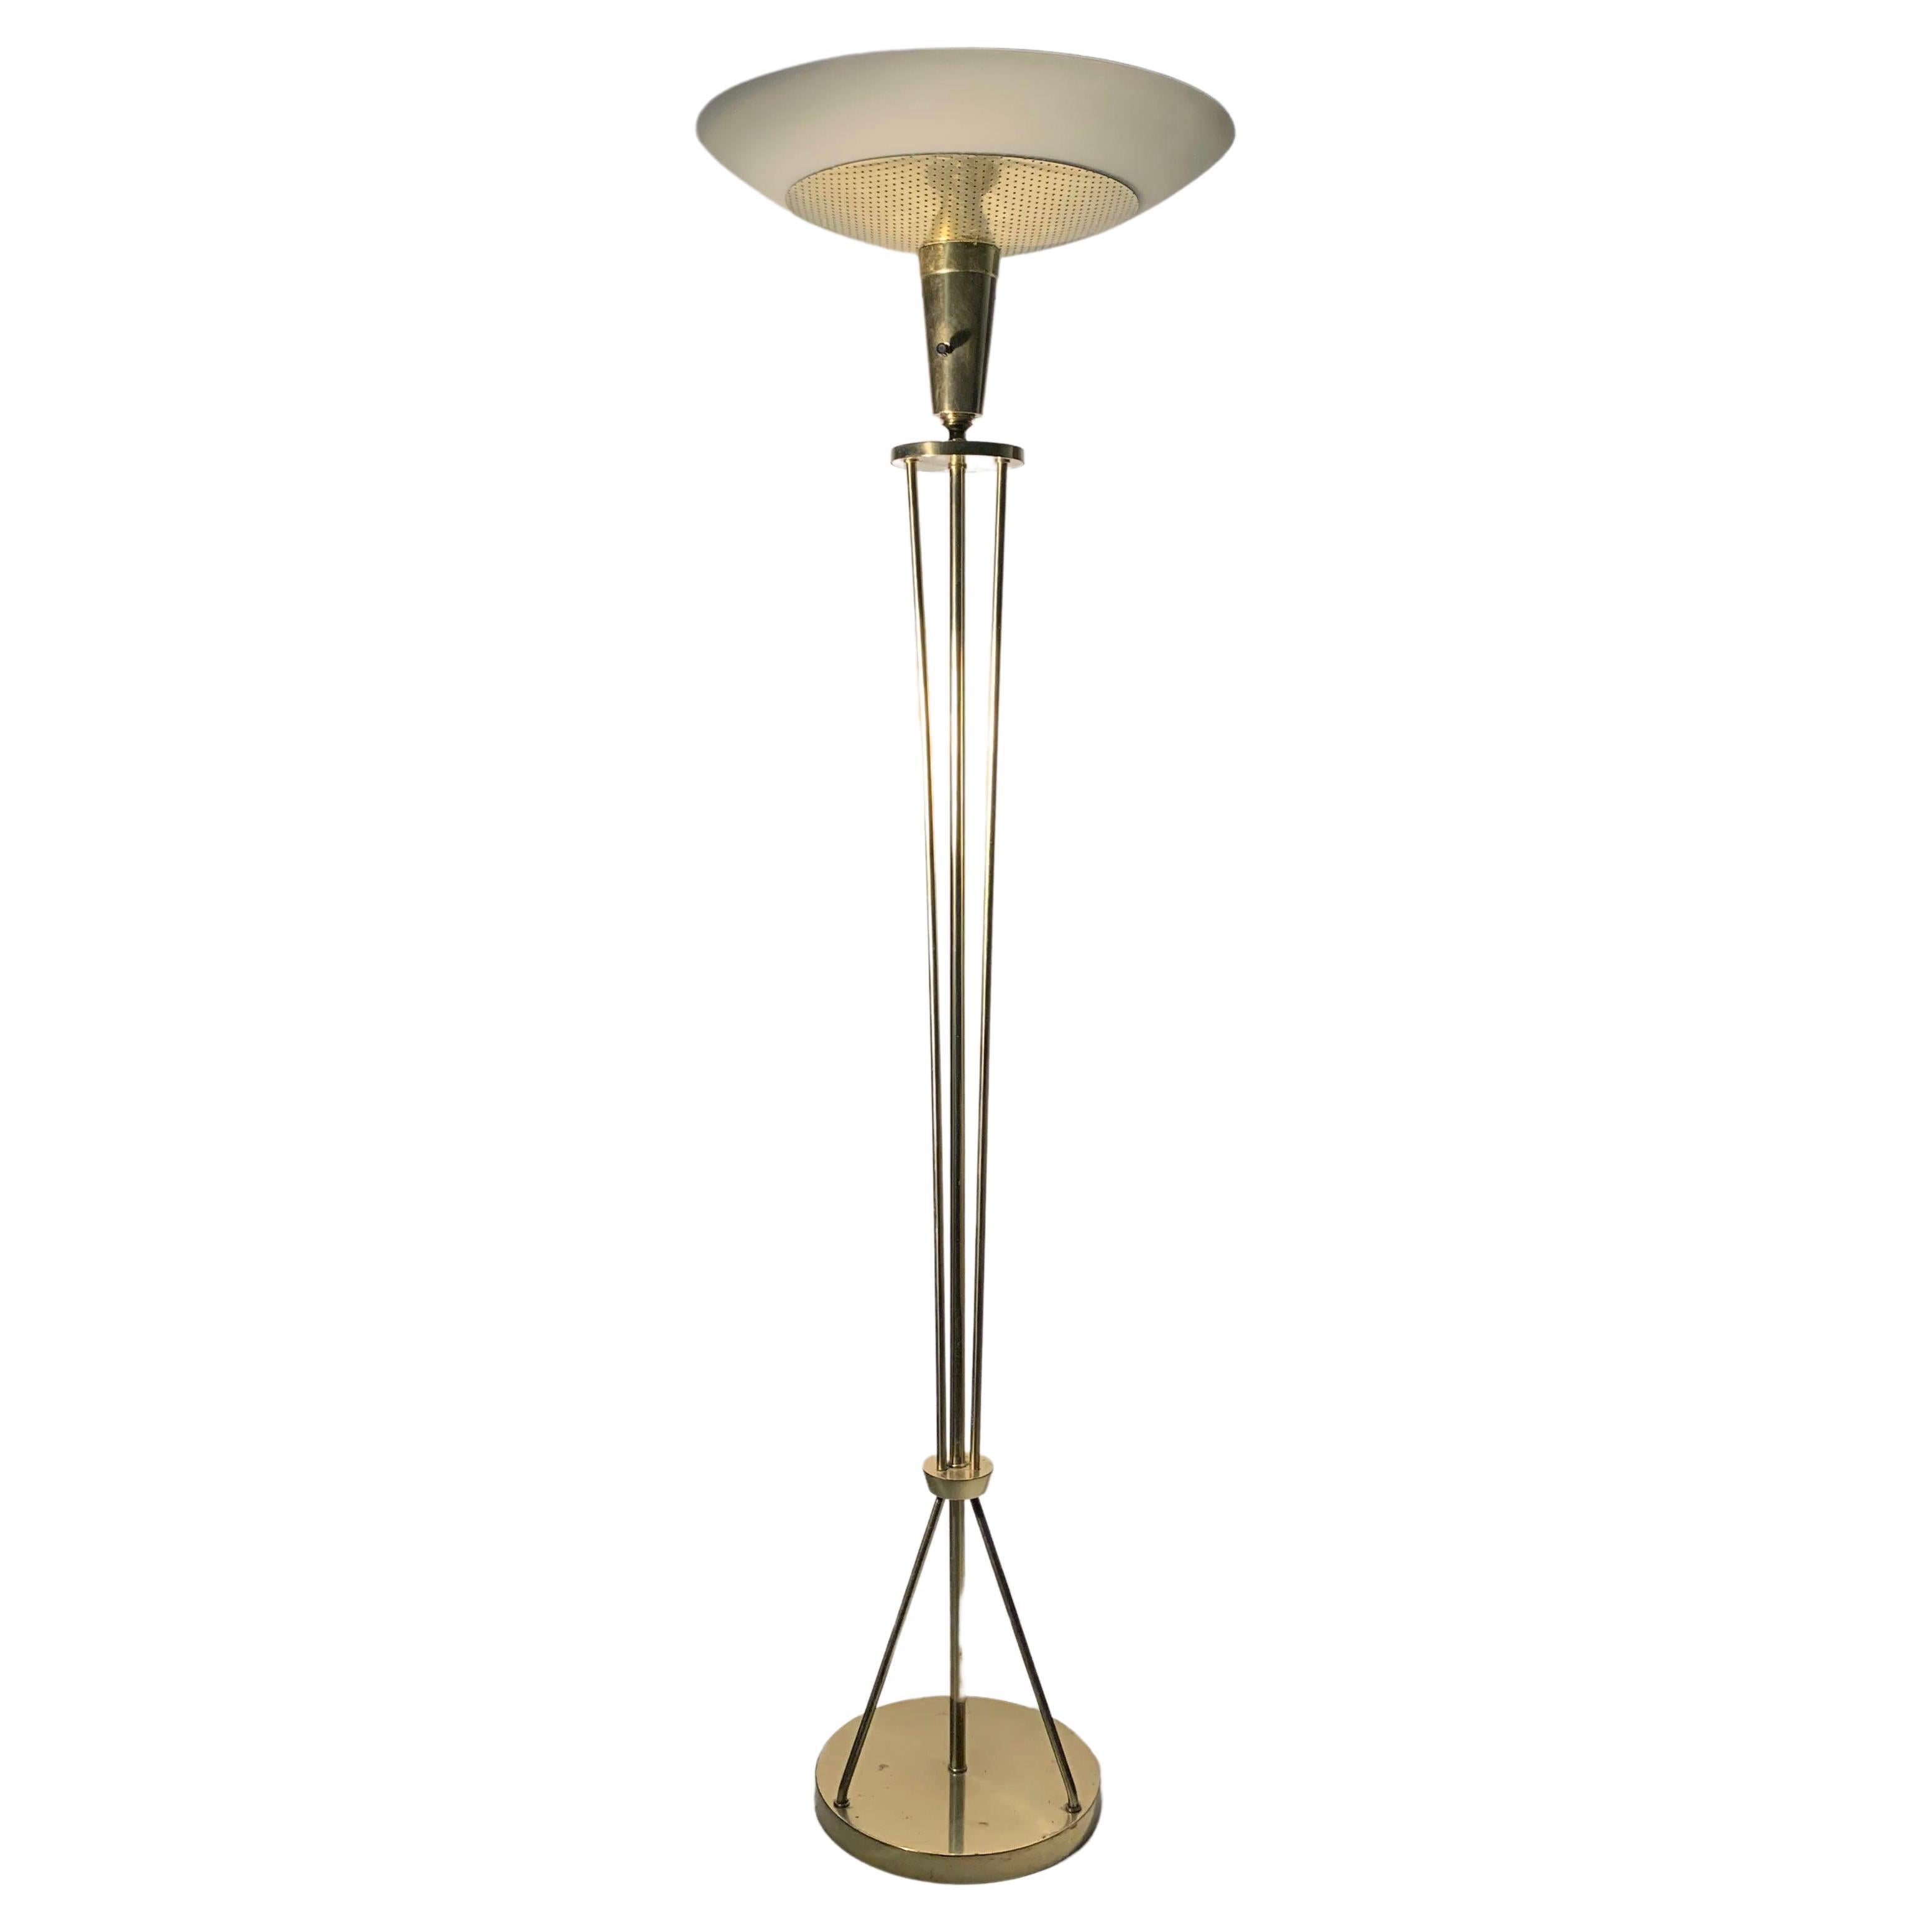 A Vintage Atomic Sputnik Torchere Floor Lamp in the manner of Arredoluce For Sale